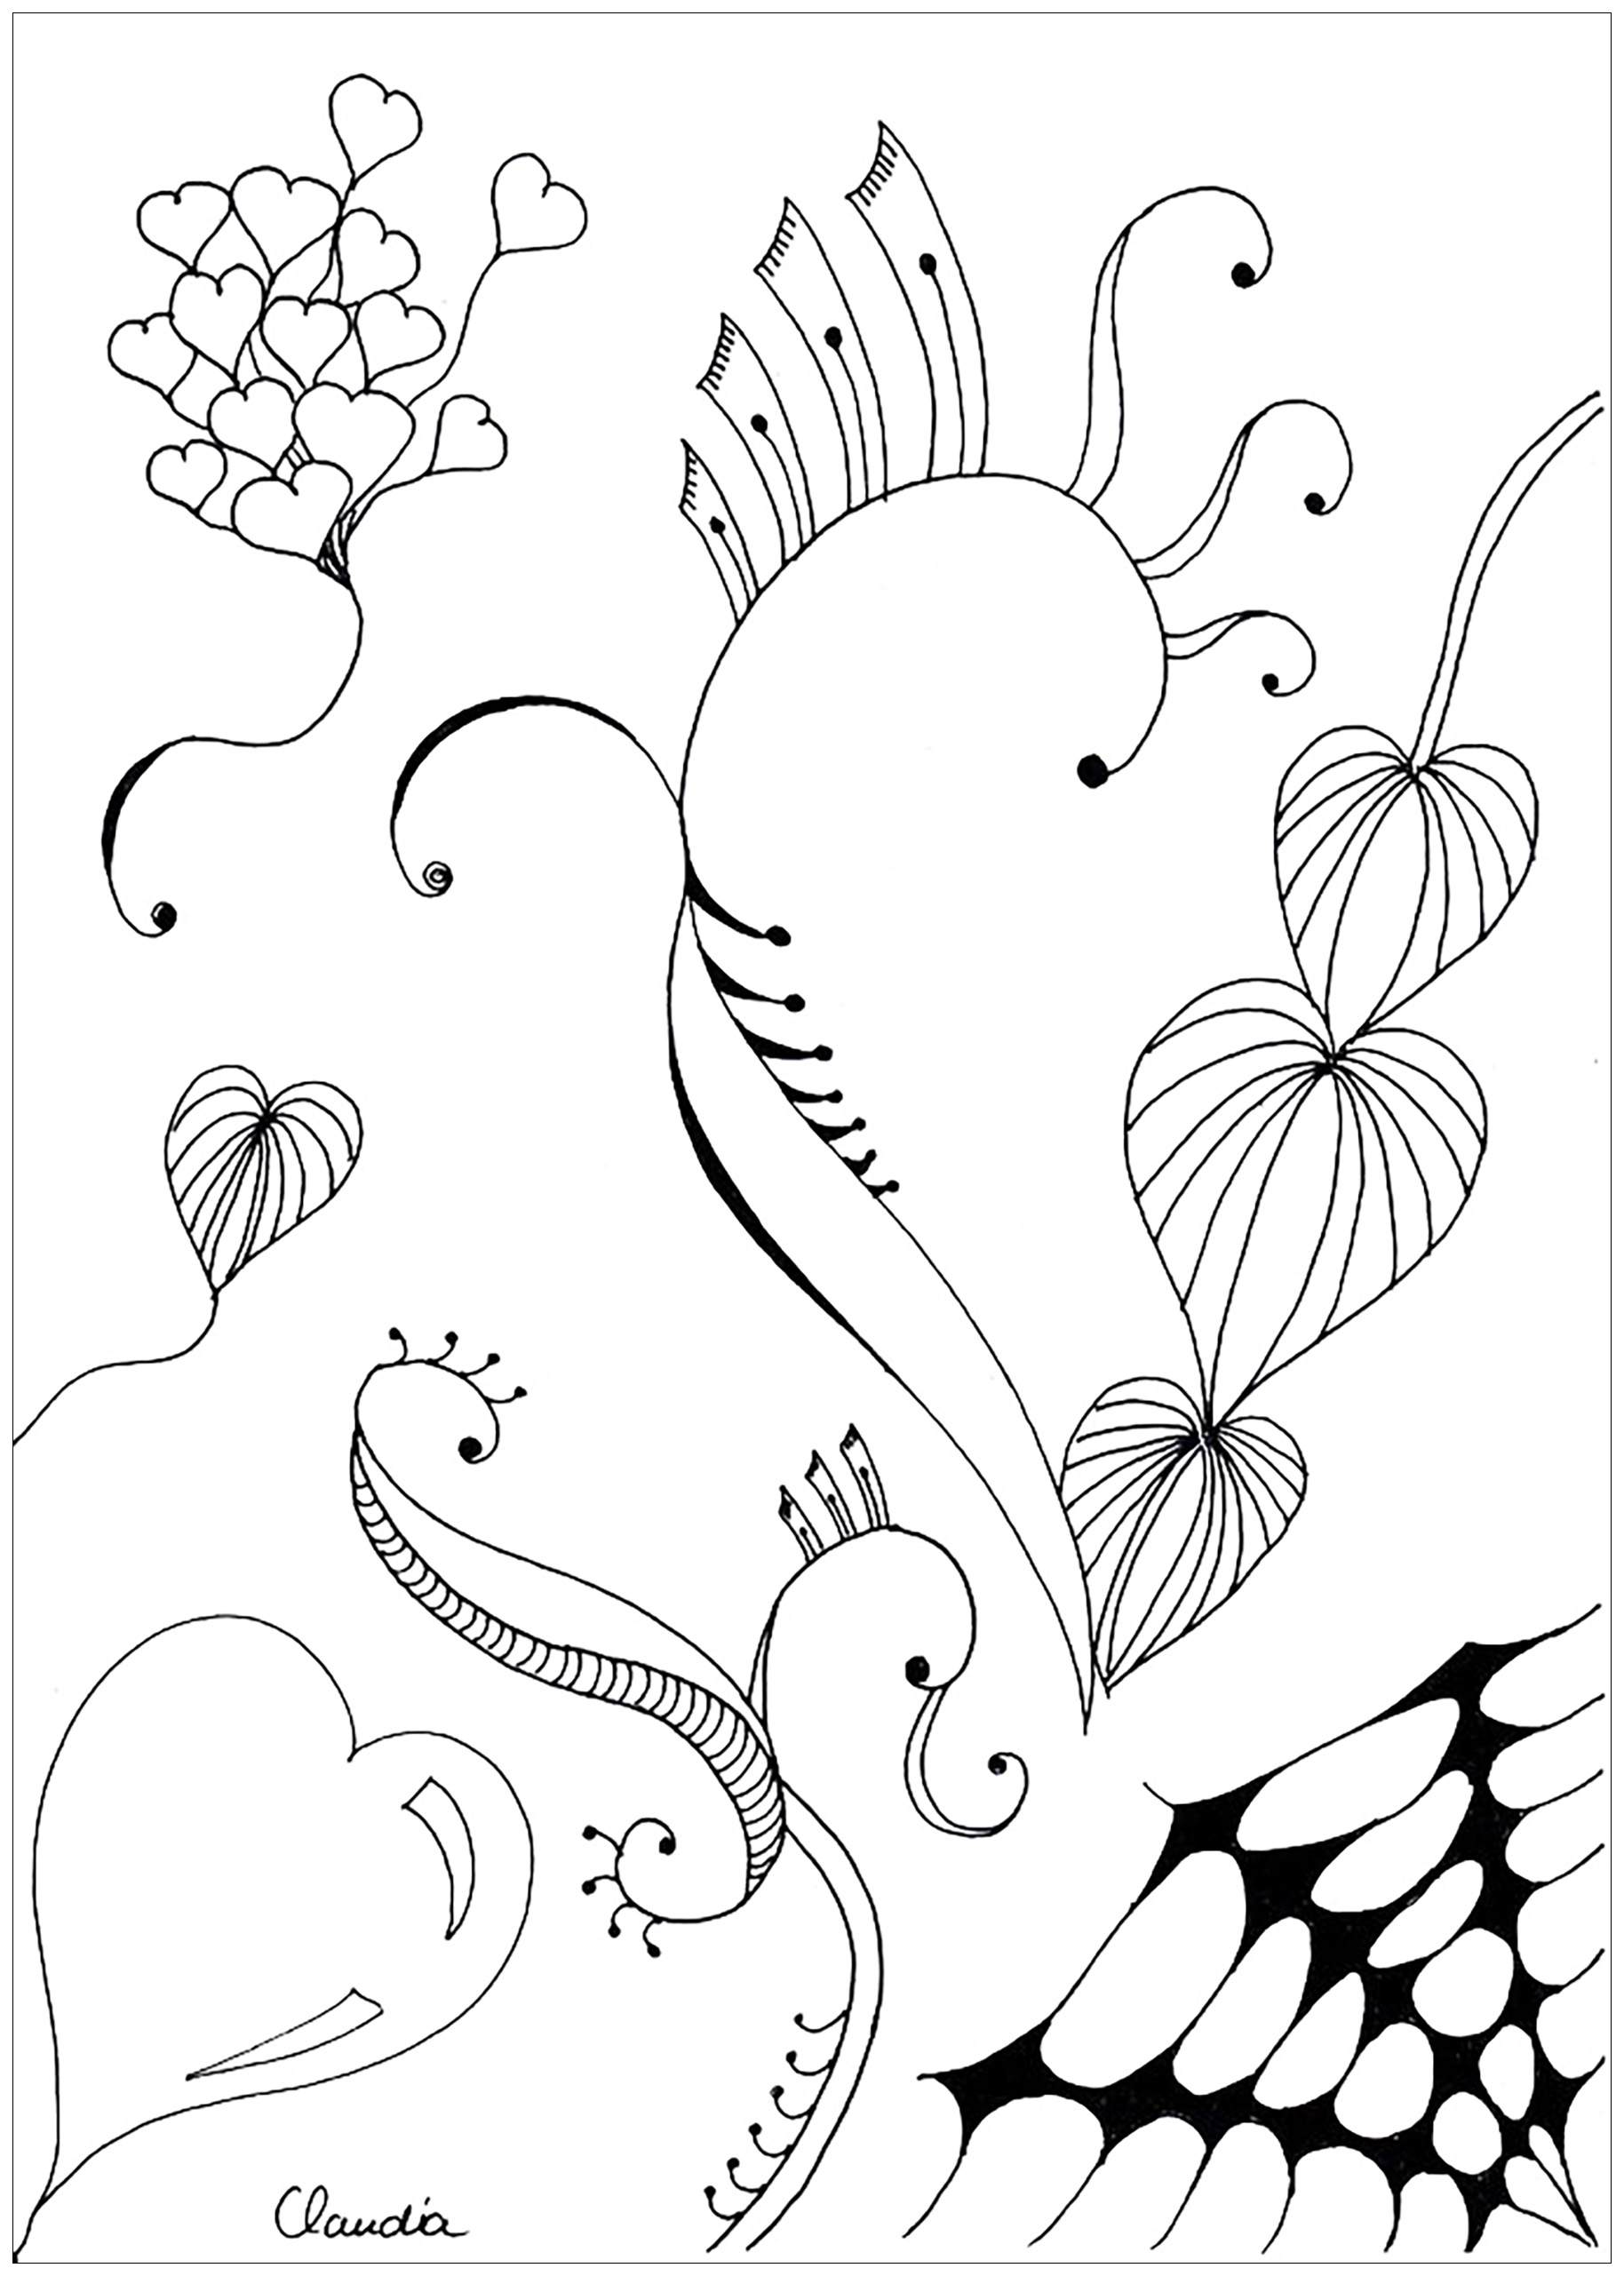 Desenhos grátis para colorir de Zentangle para imprimir e colorir